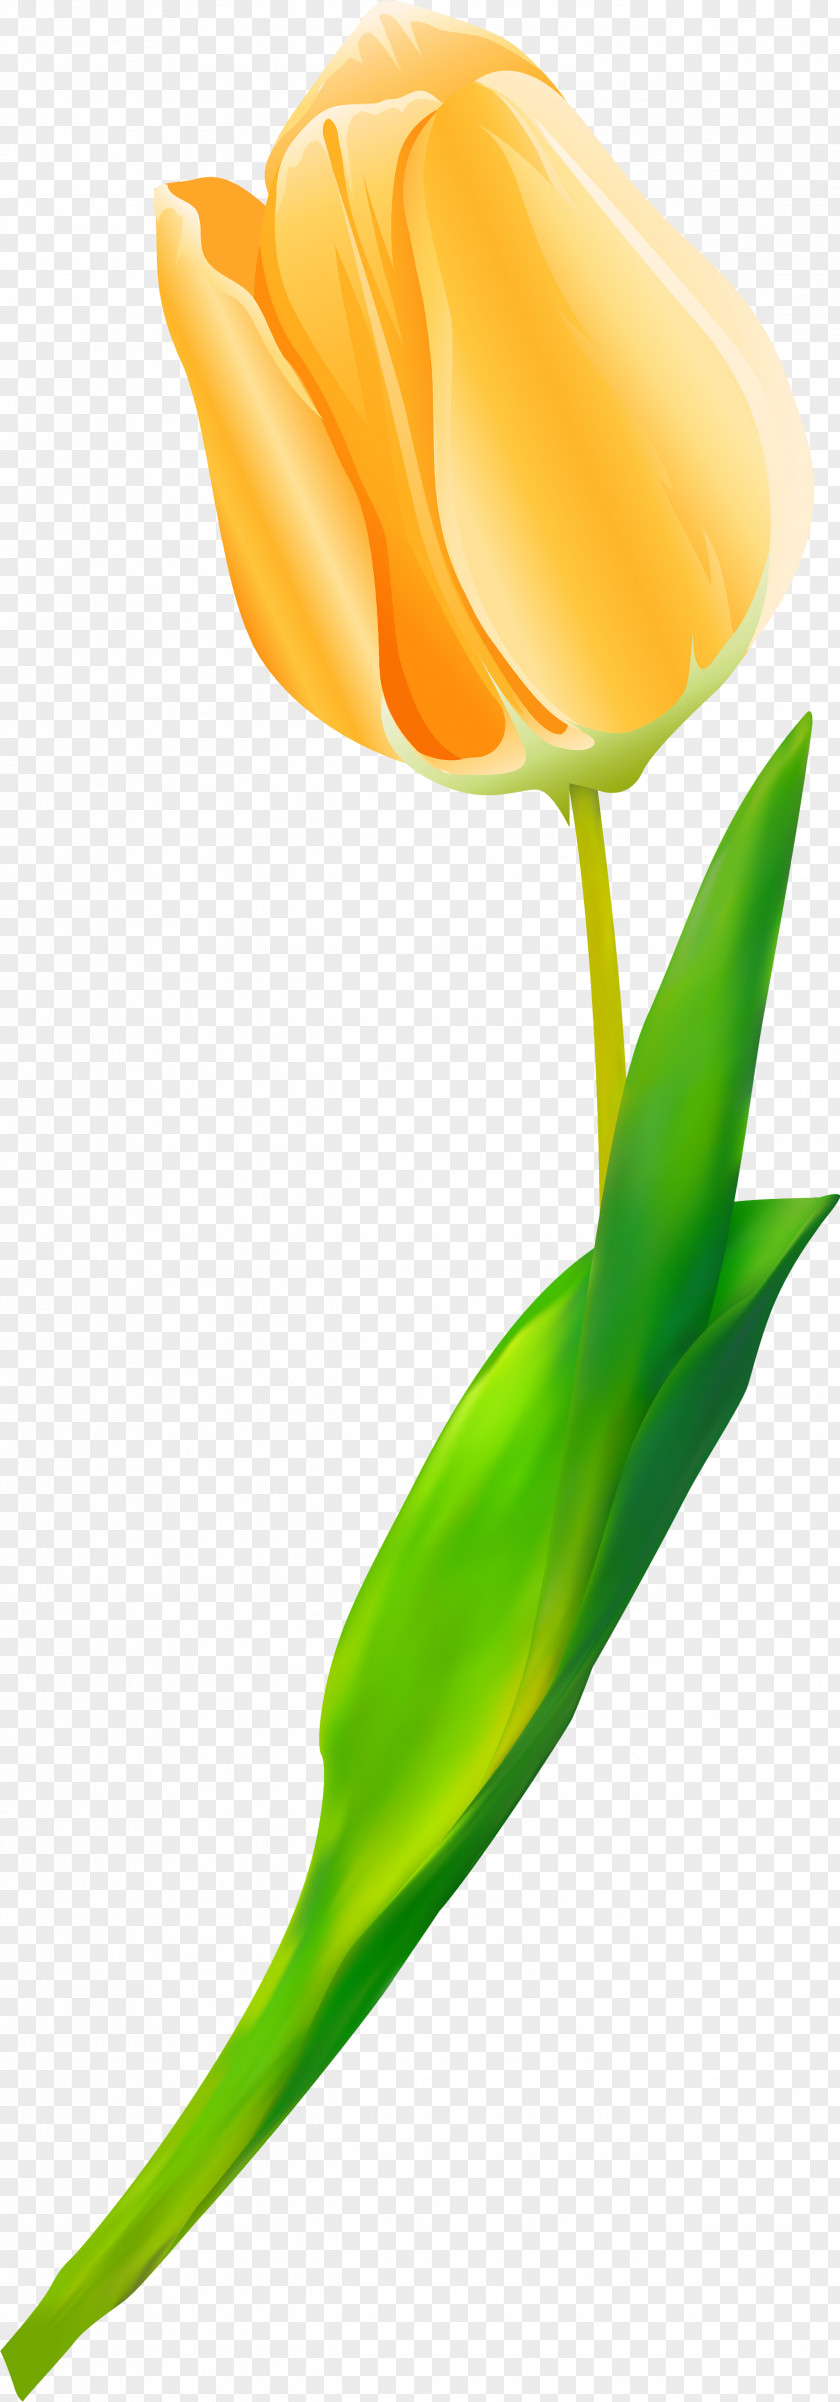 Tulip Cut Flowers Plant Stem Petal Close-up PNG